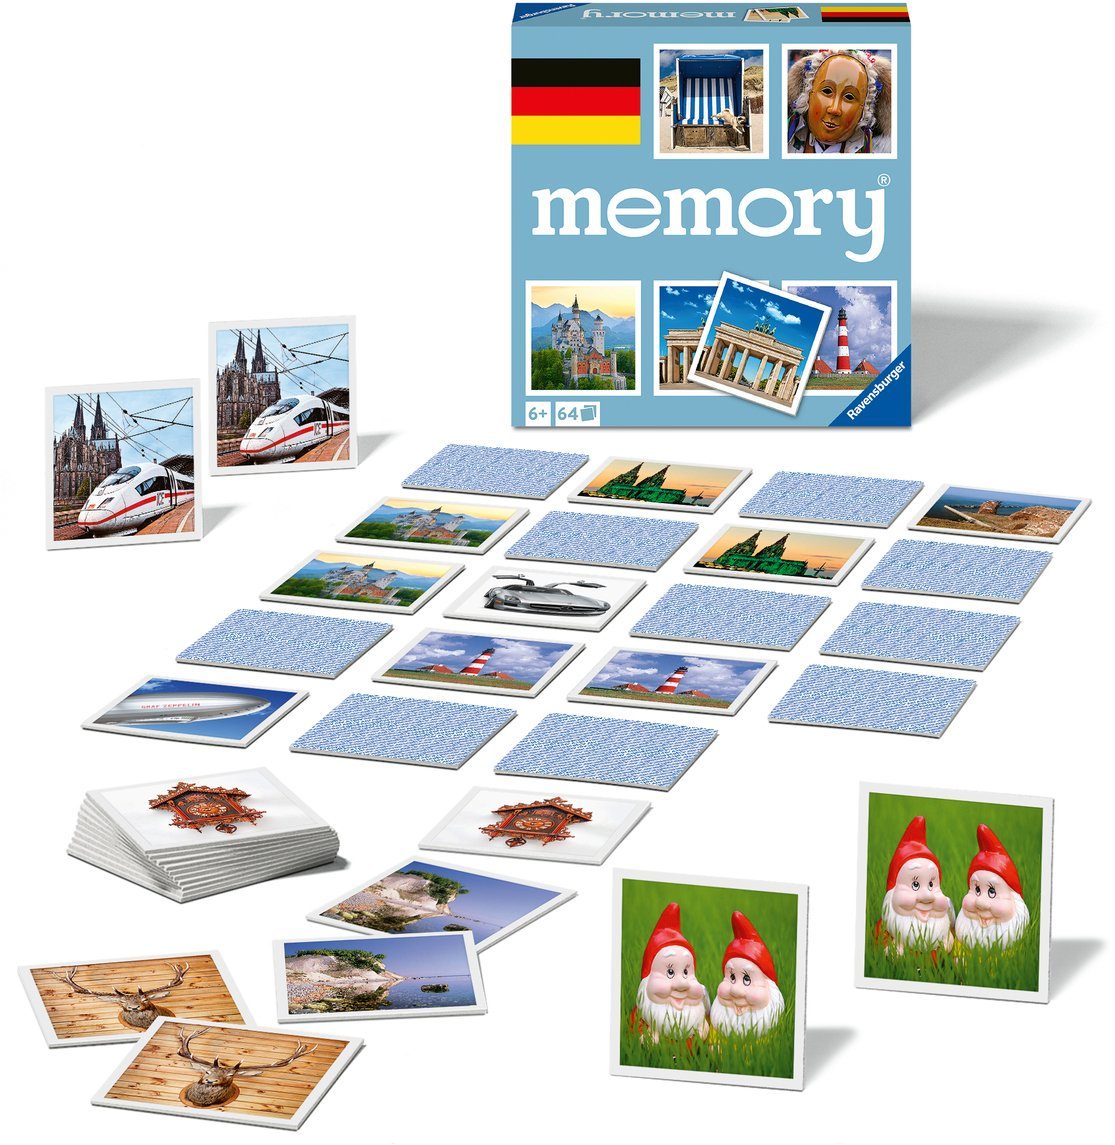 Ravensburger Spiel, Merkspiel Deutschland memory®, Made in Europe, FSC® - schützt Wald - weltweit